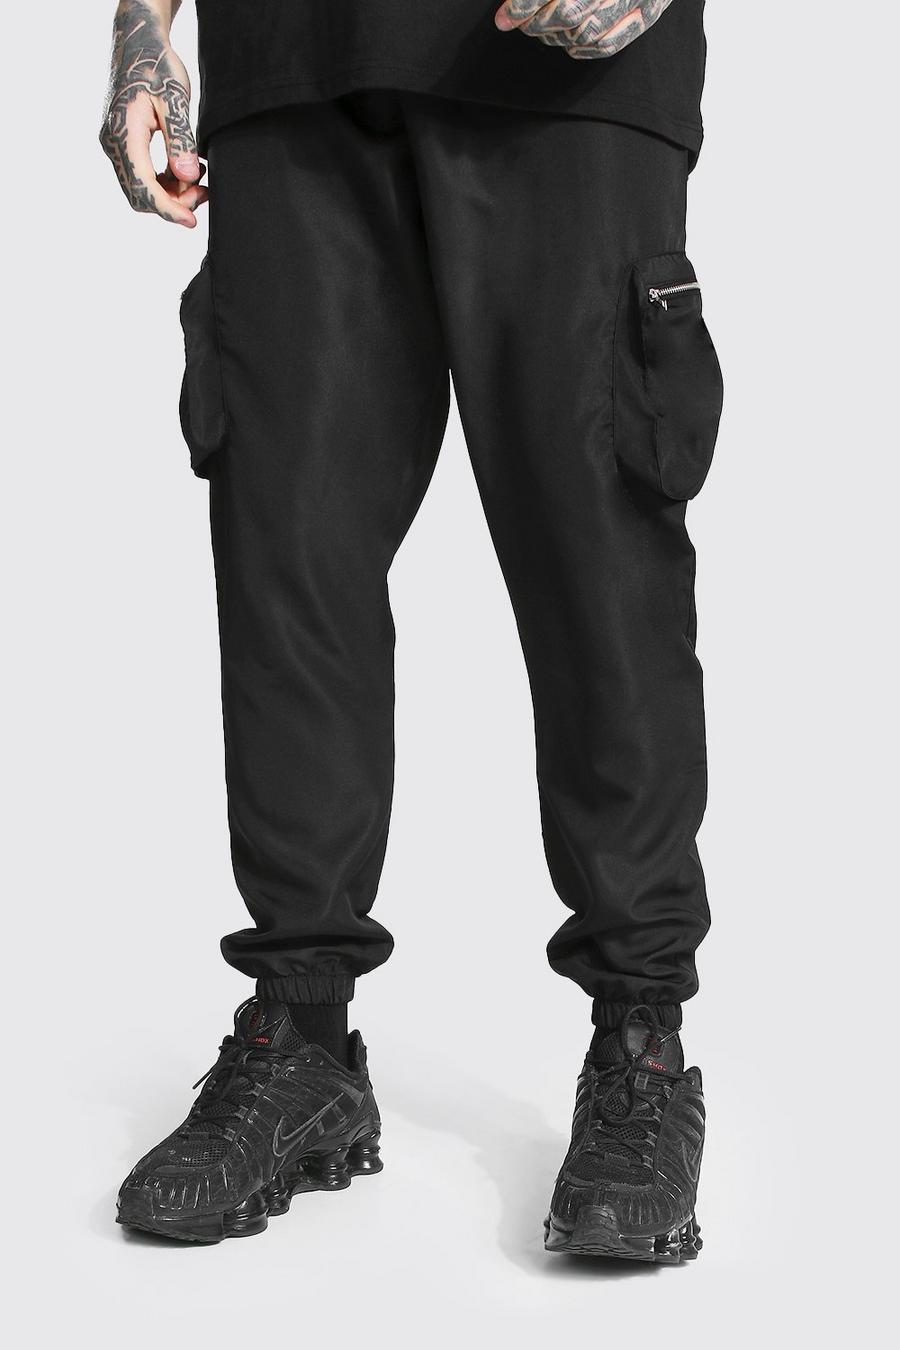 שחור מכנסי דגמ"ח עם אבזם, כיסים בולטים וכיתוב Original Man image number 1